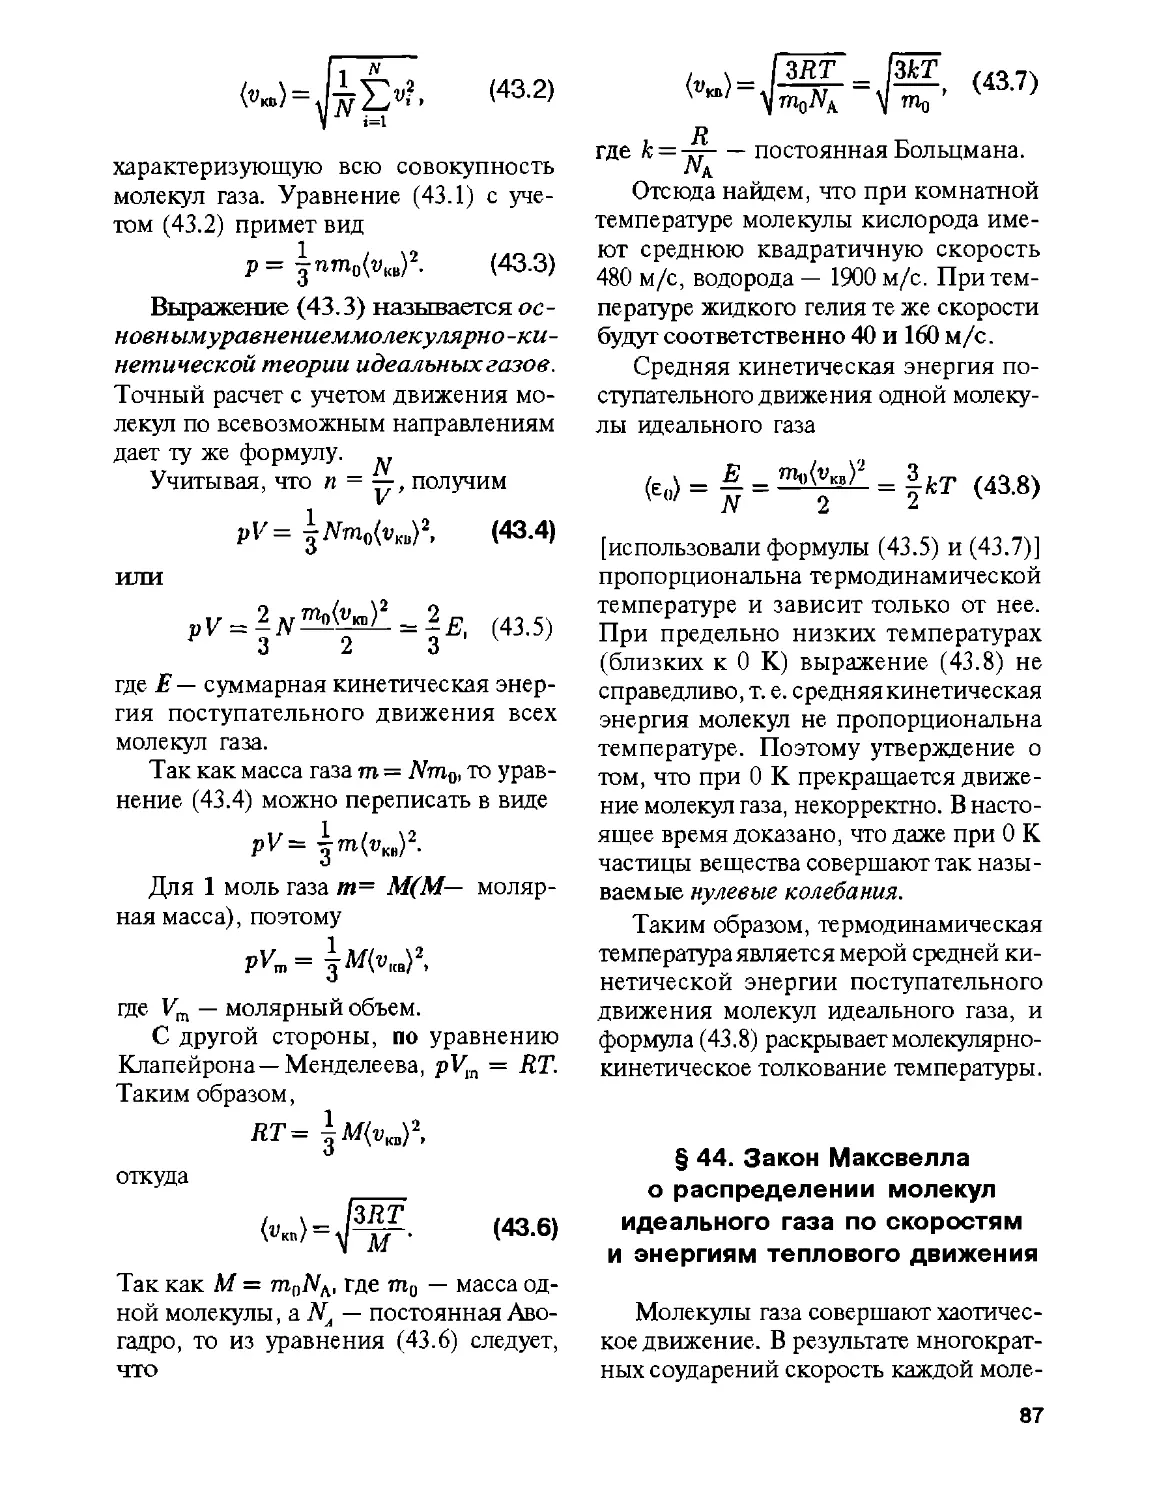 § 44. Закон Максвелла о распределении молекул идеального газа по скоростям и энергиям теплового движения